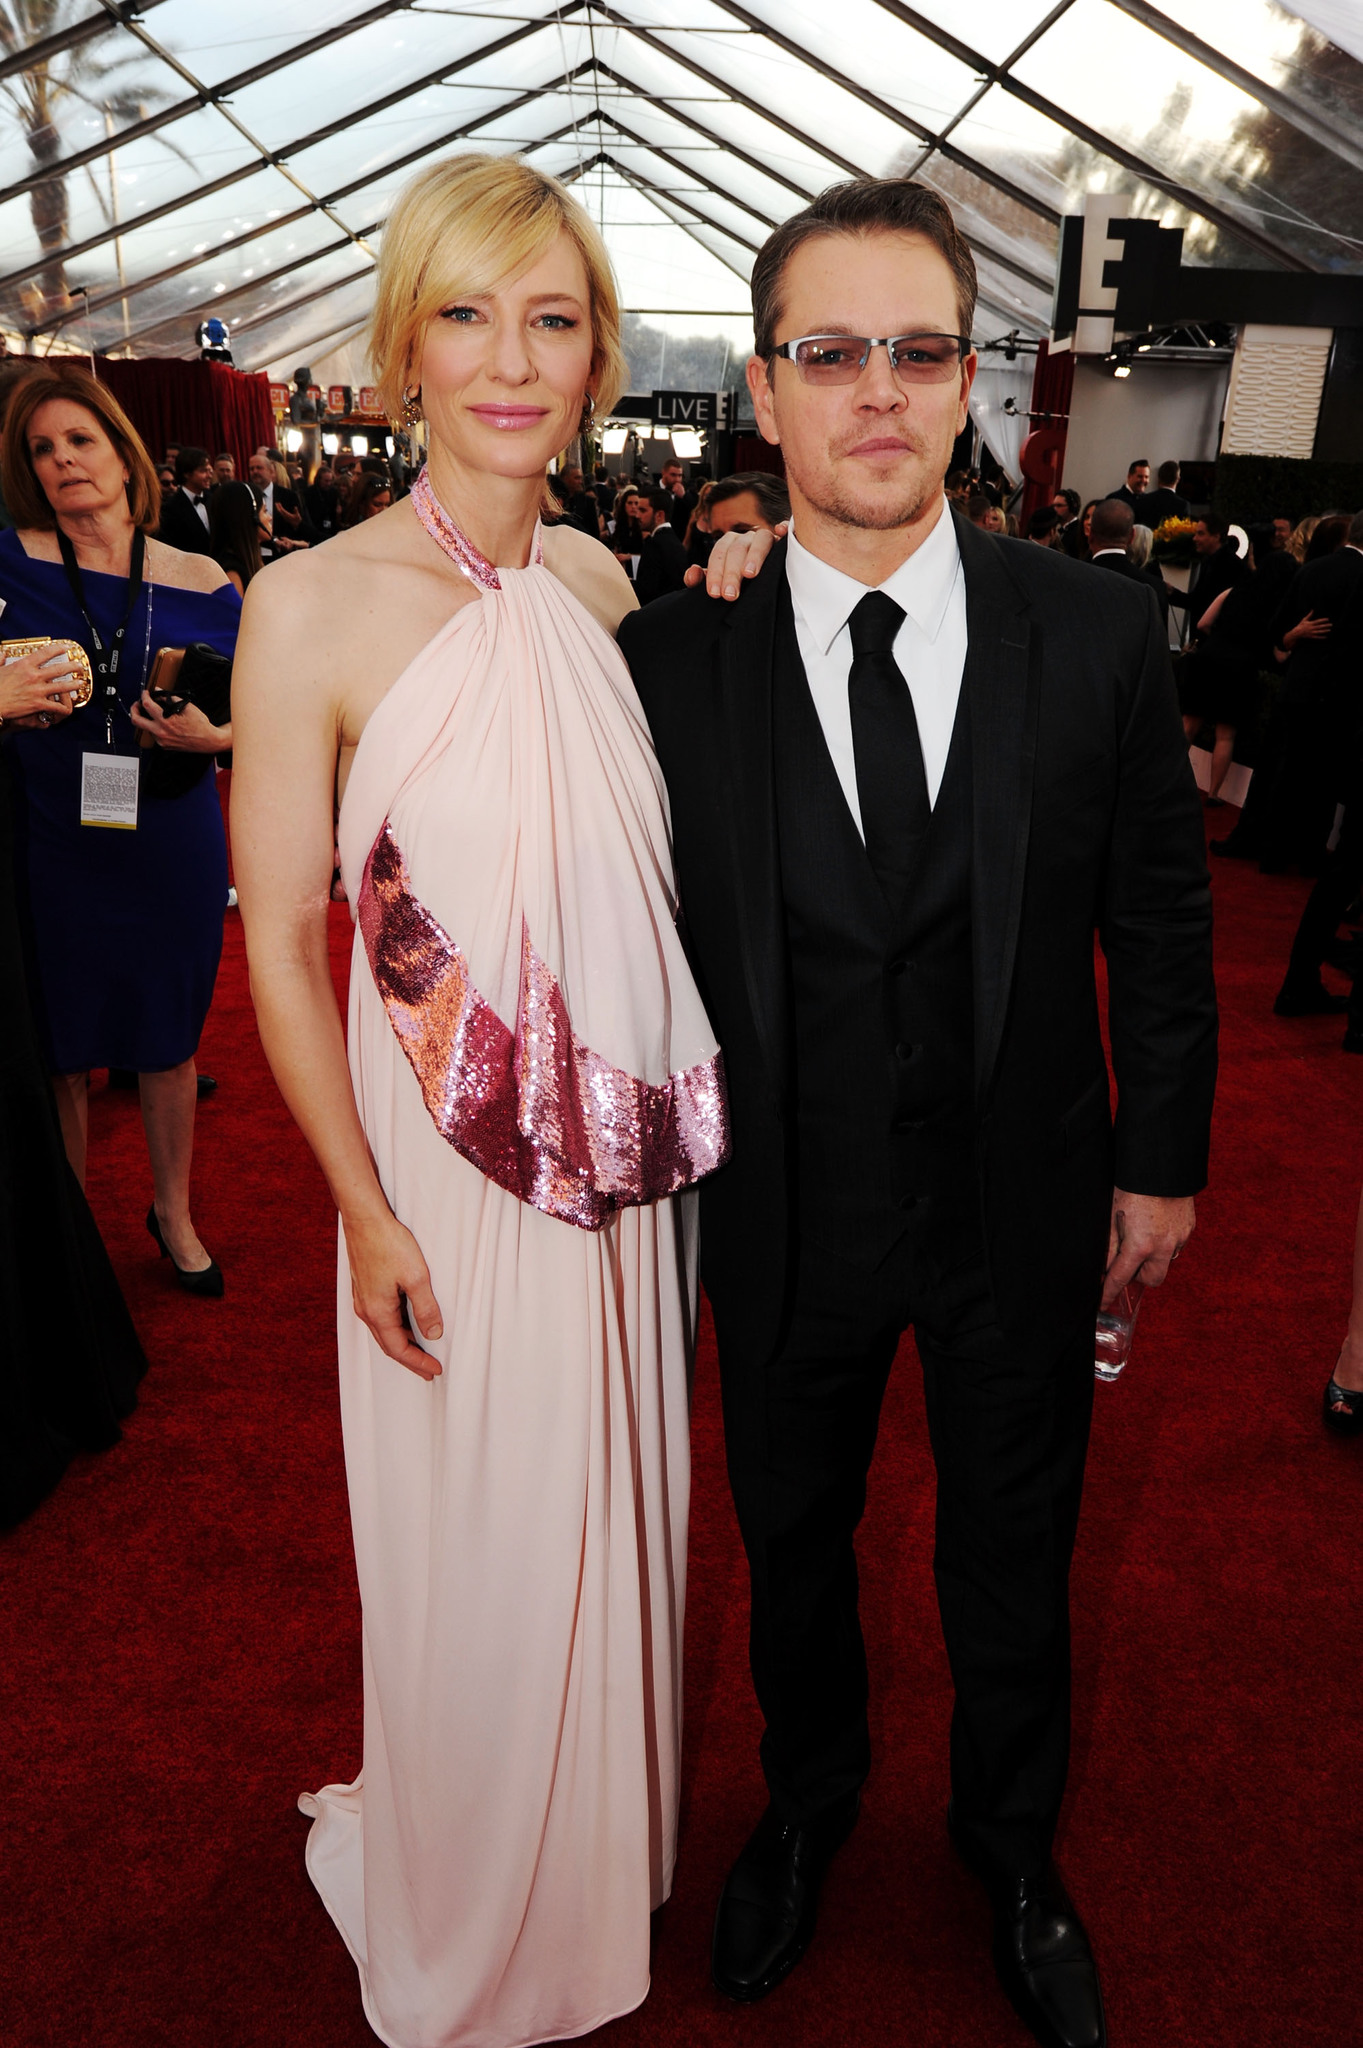 Matt Damon and Cate Blanchett